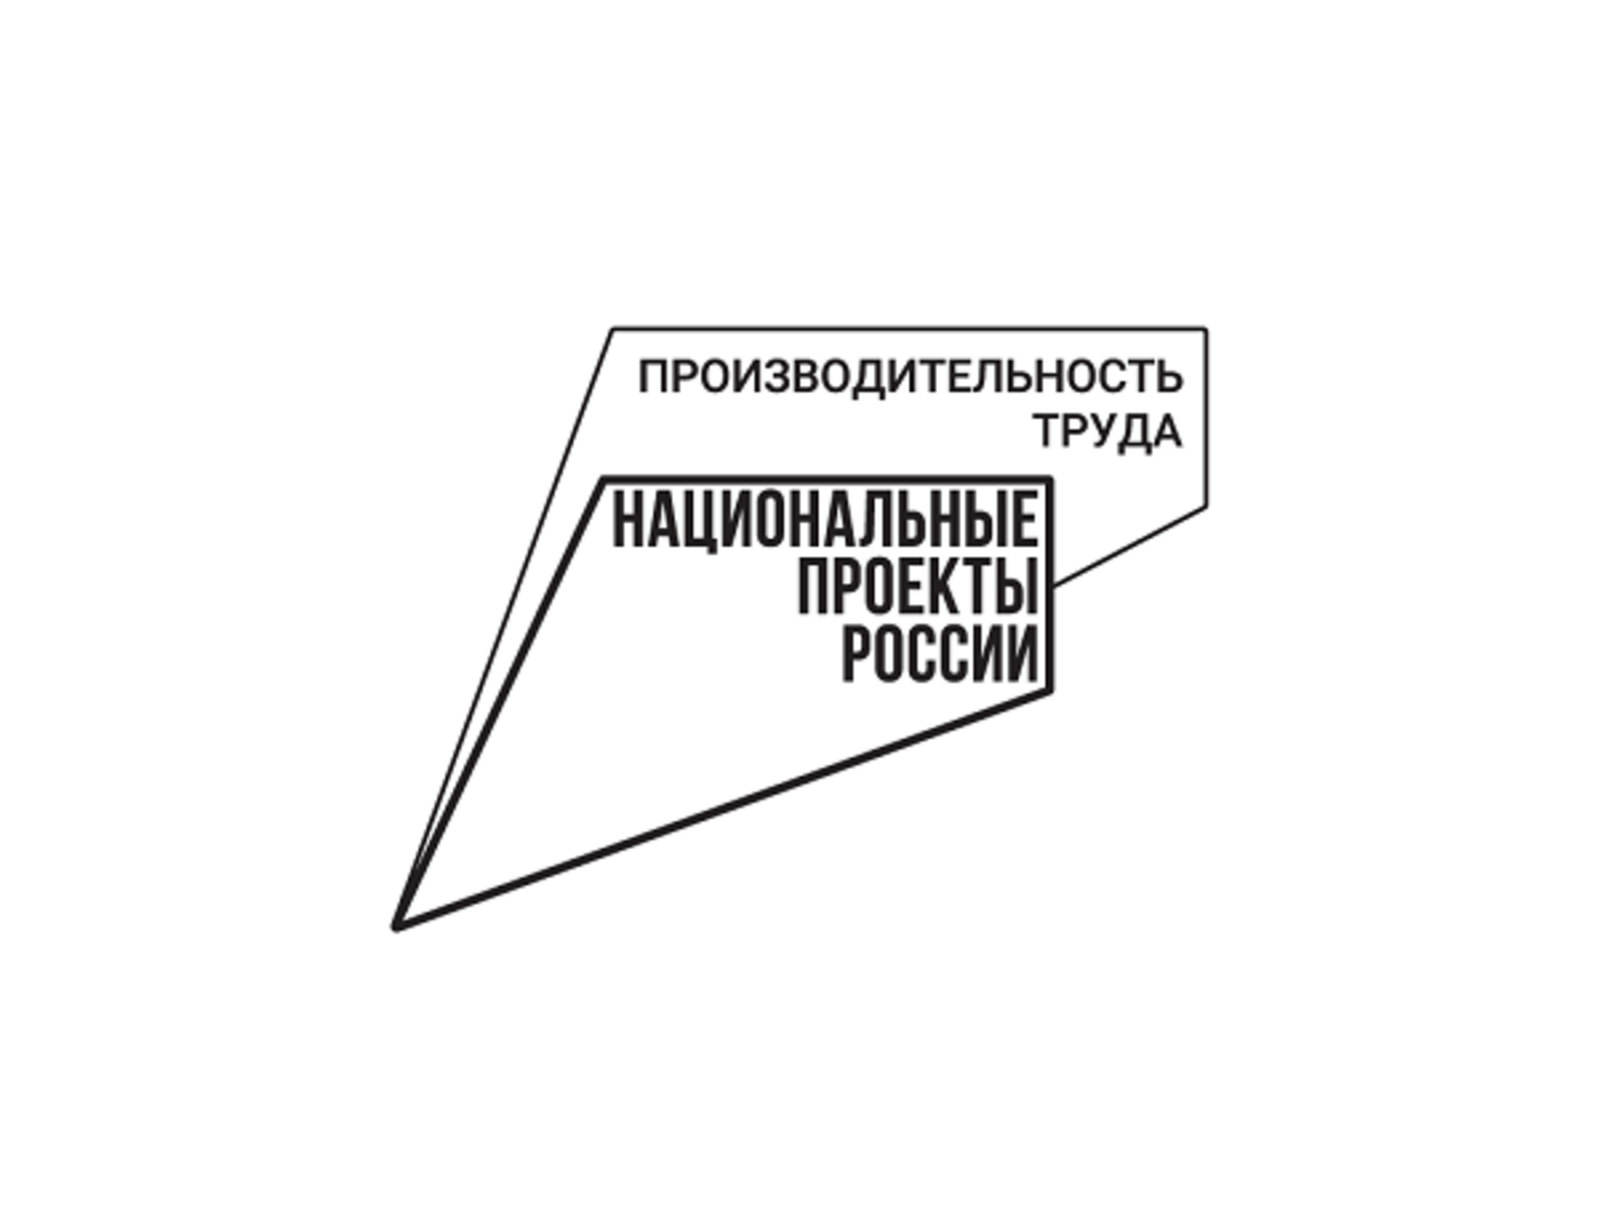 До конца года 130 предприятий Башкортостана будут вовлечены в нацпроект «Производительность труда»